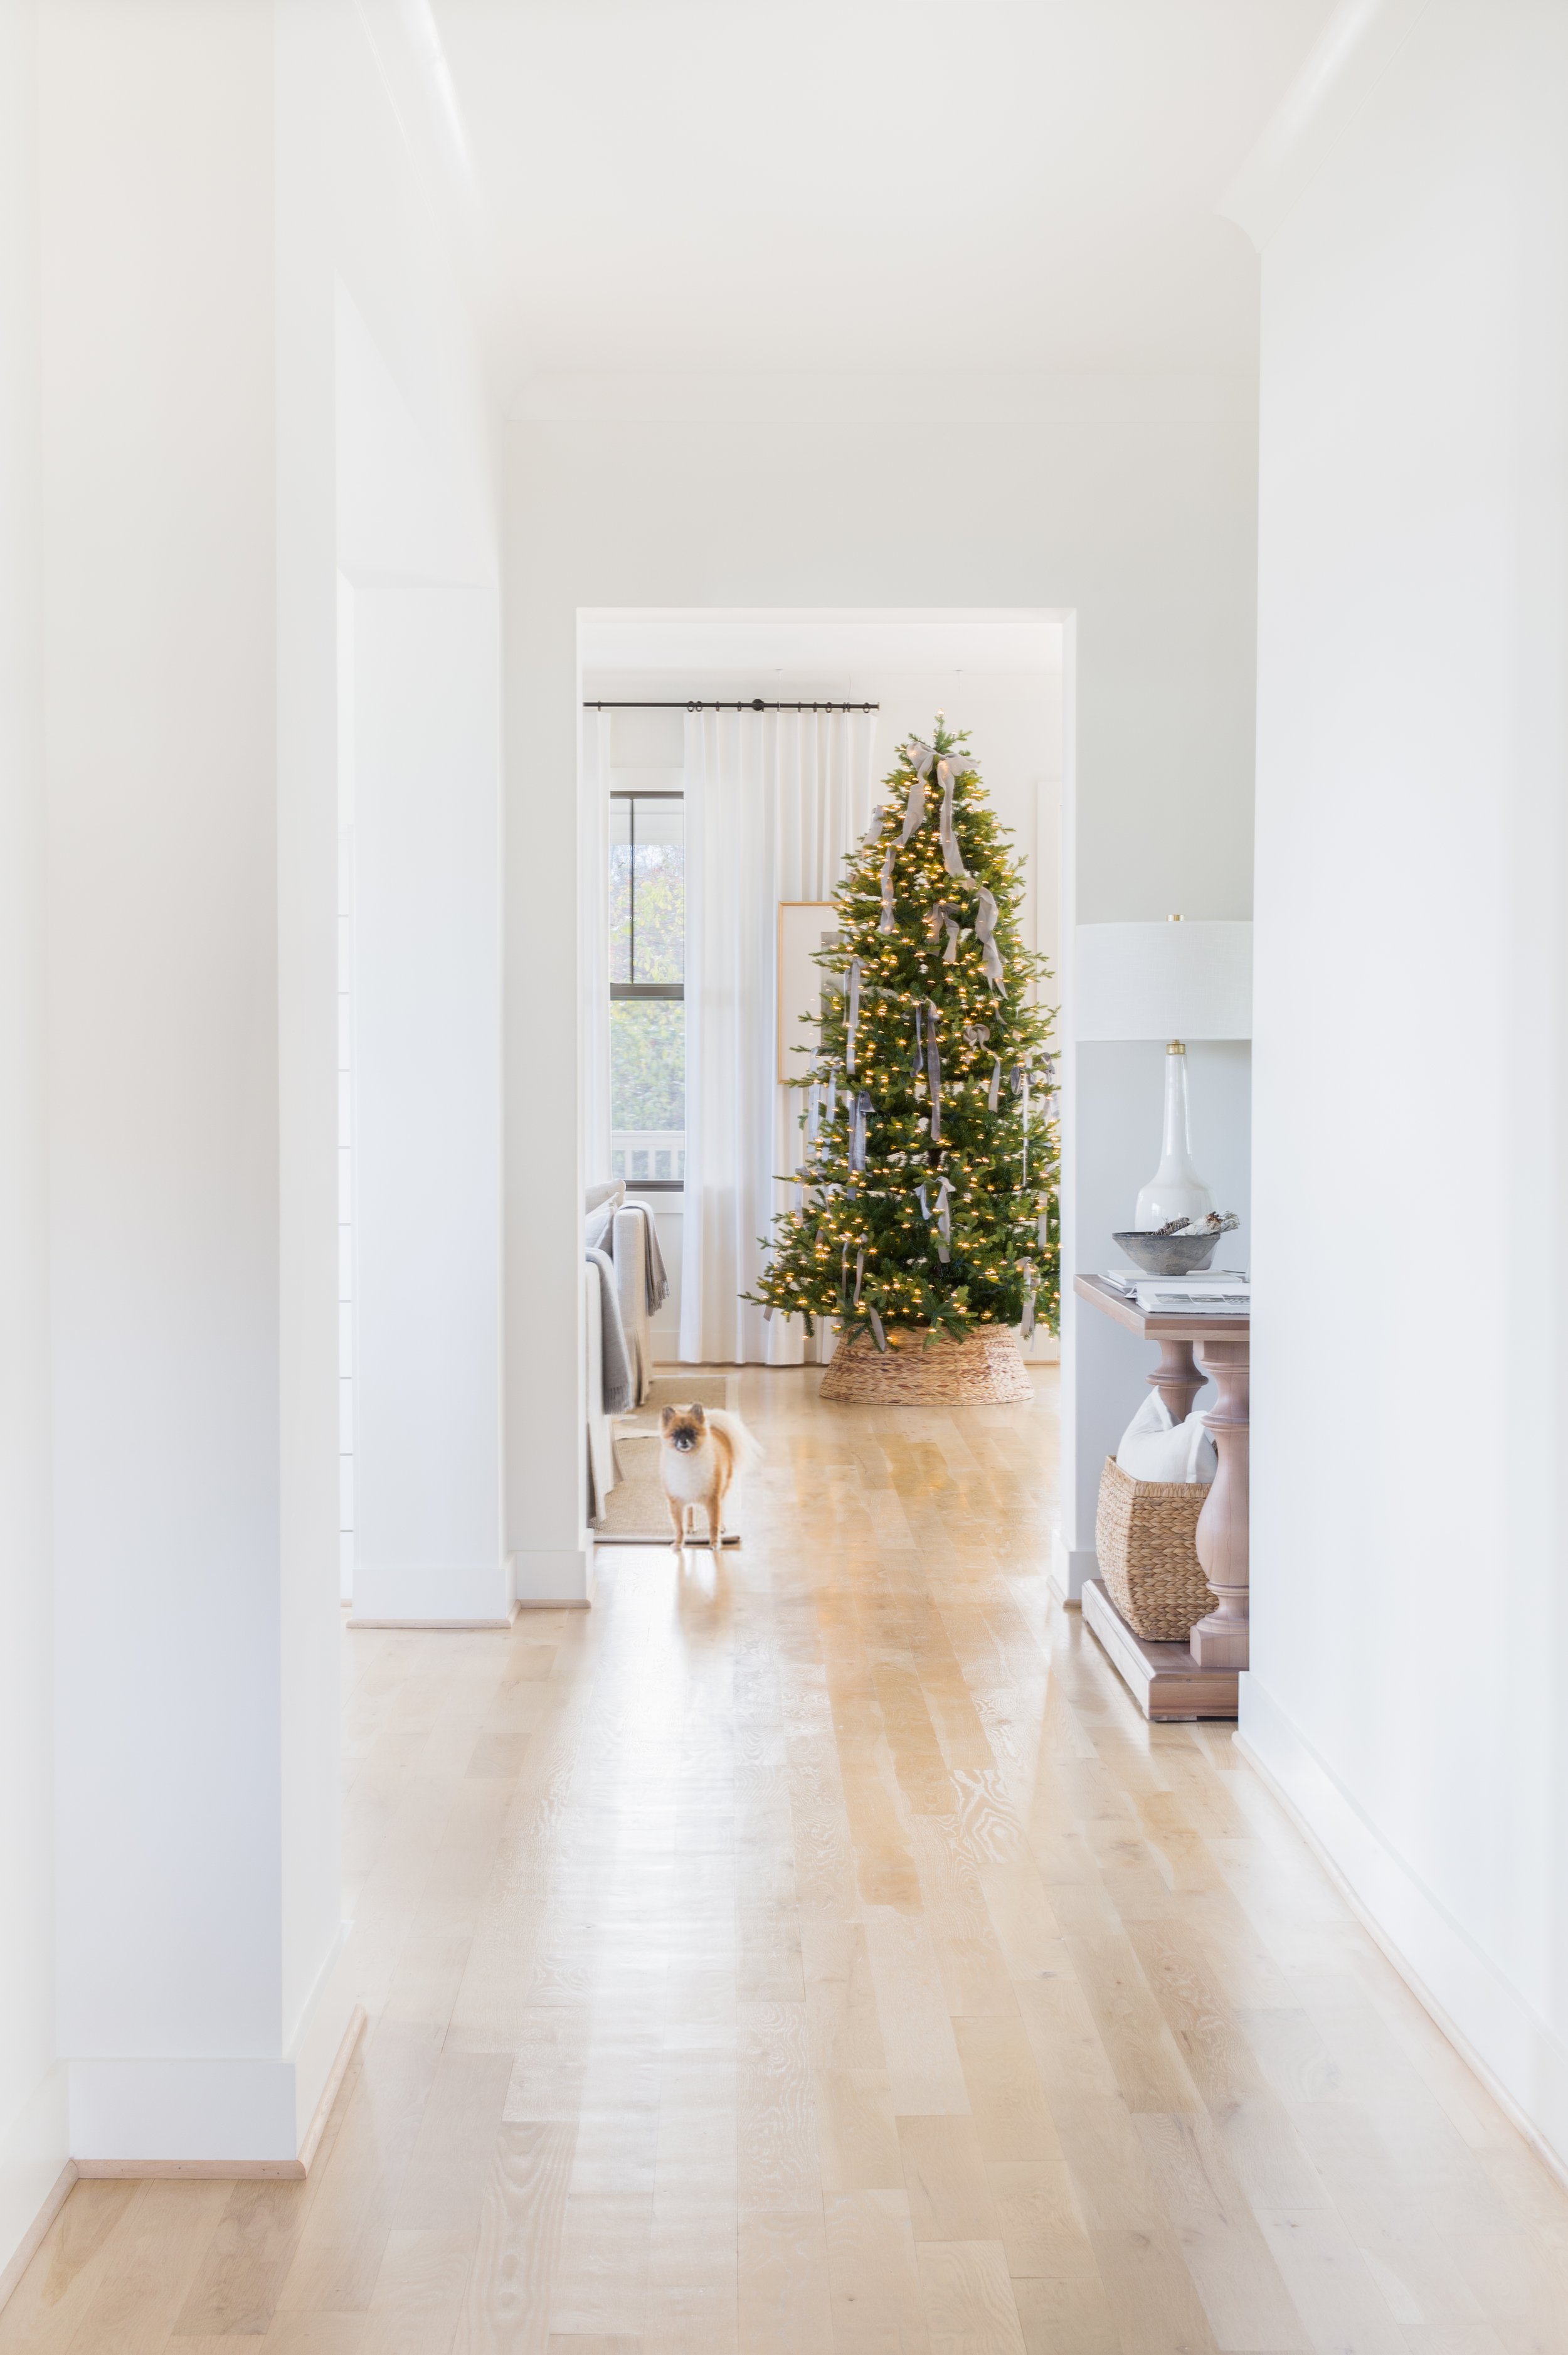 ©AlyssaRosenheck Ribbons on Christmas Tree Holiday Styling by Alyssa Rosenheck